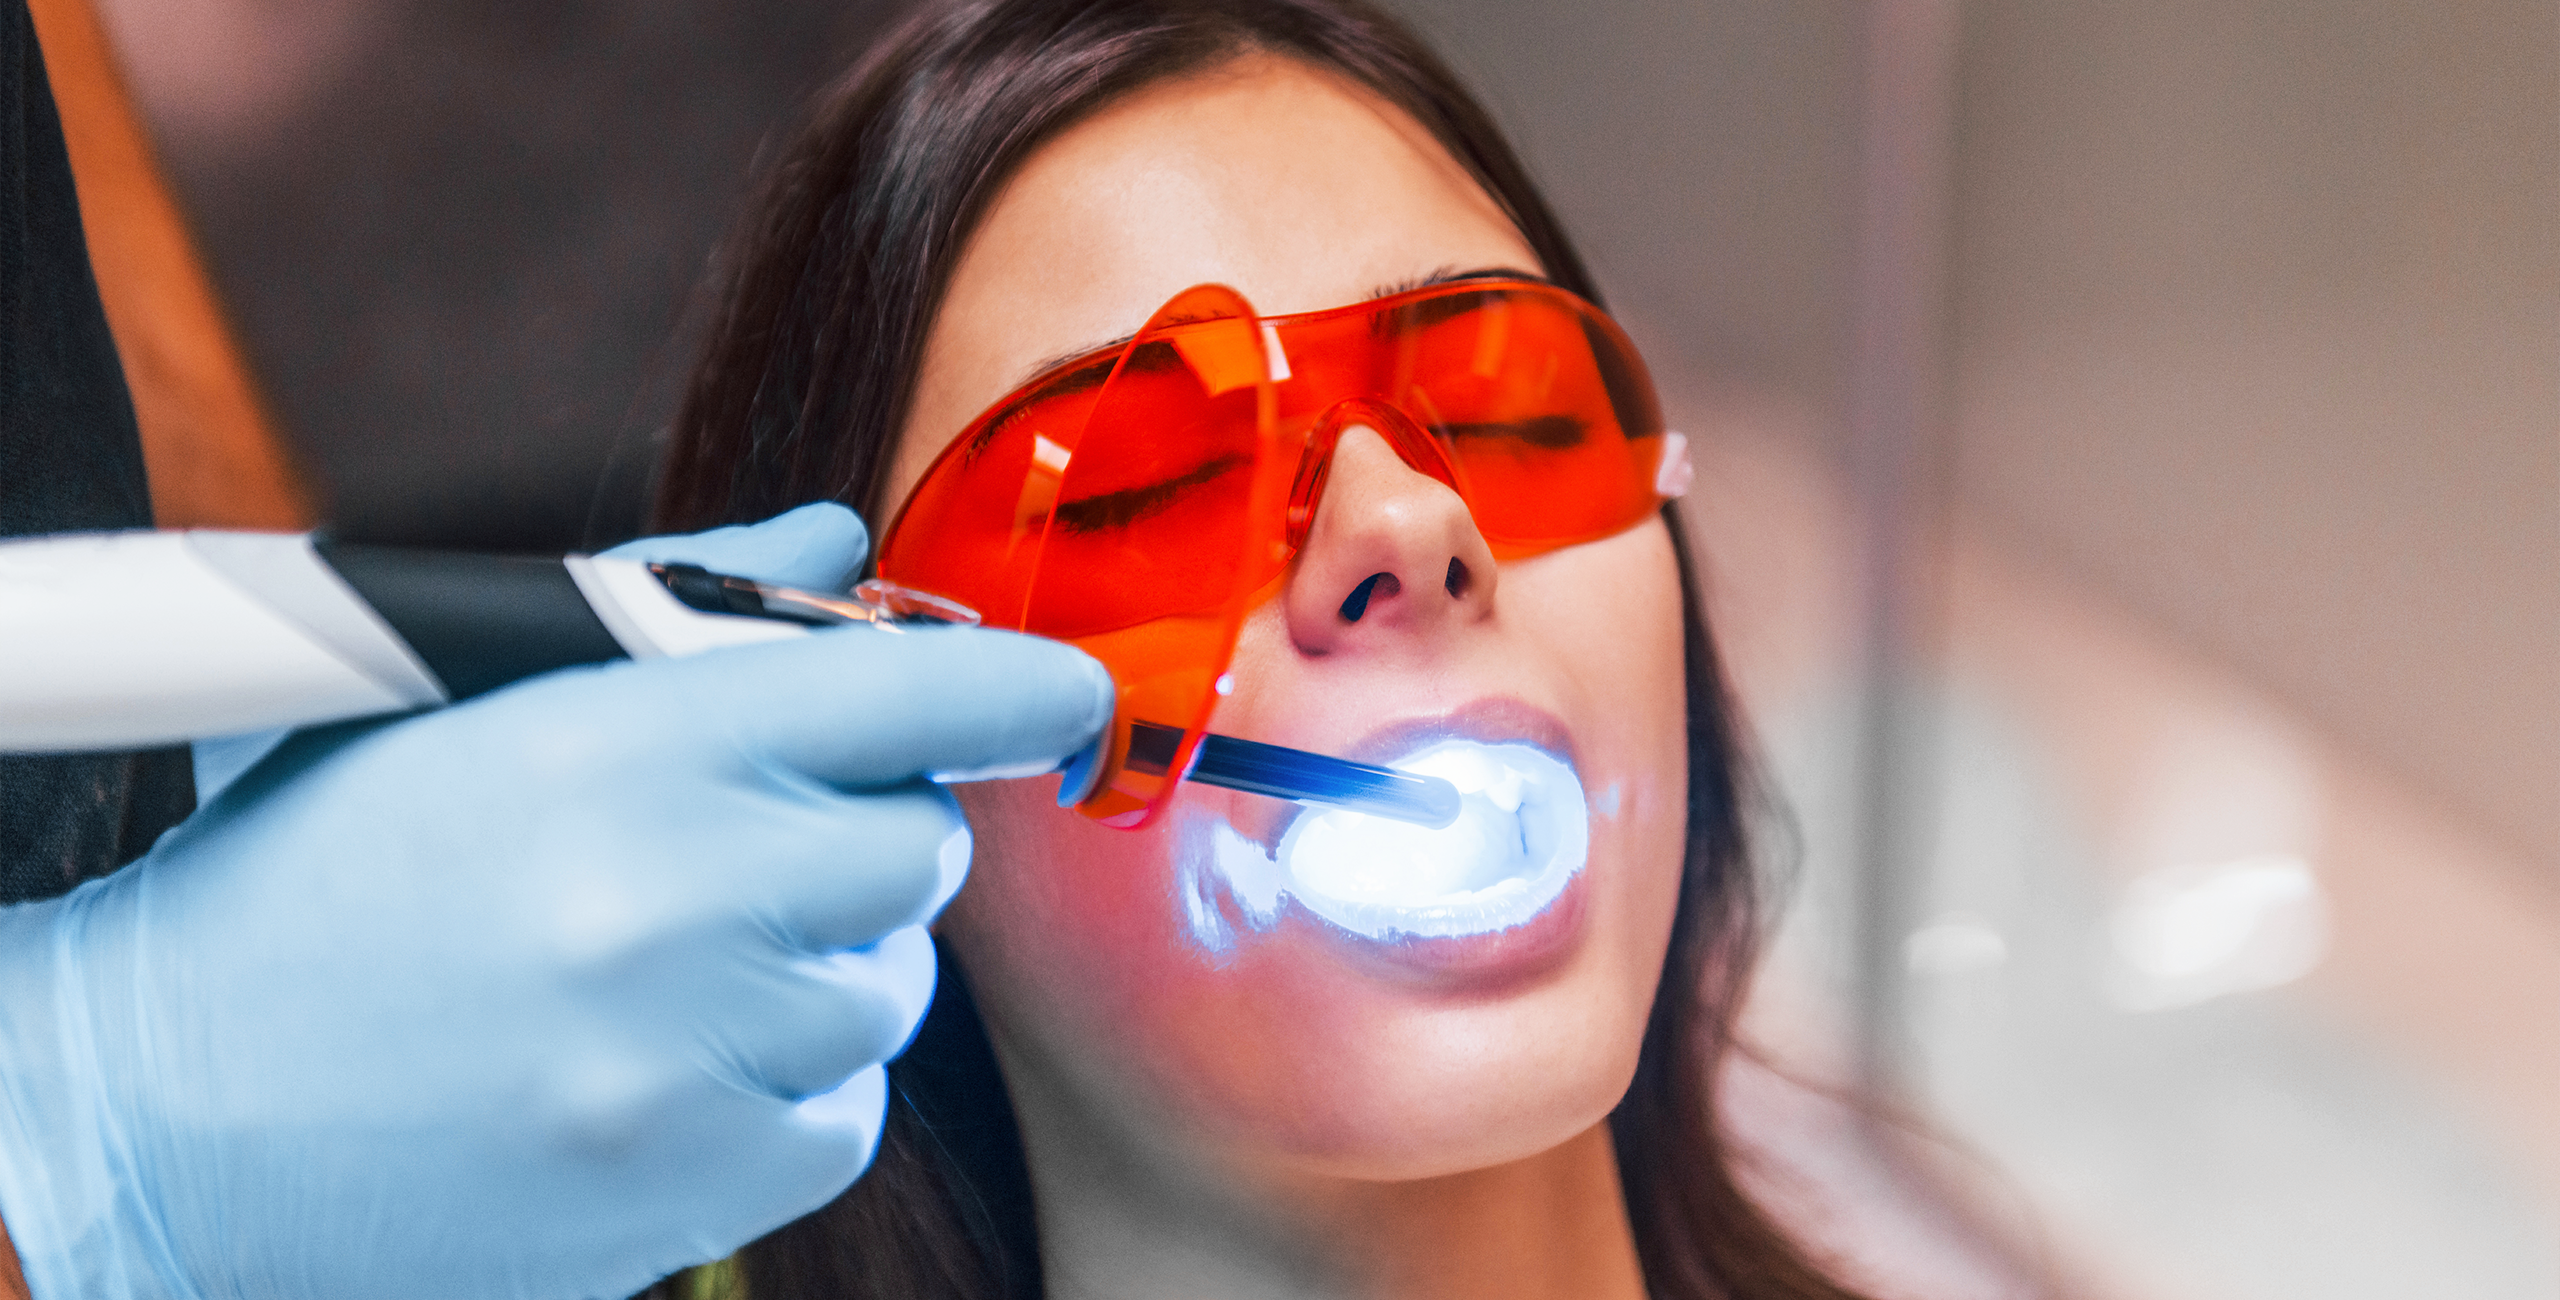 ما هو الفرق بين حشو الاسنان العادي والحشو بالليزر؟